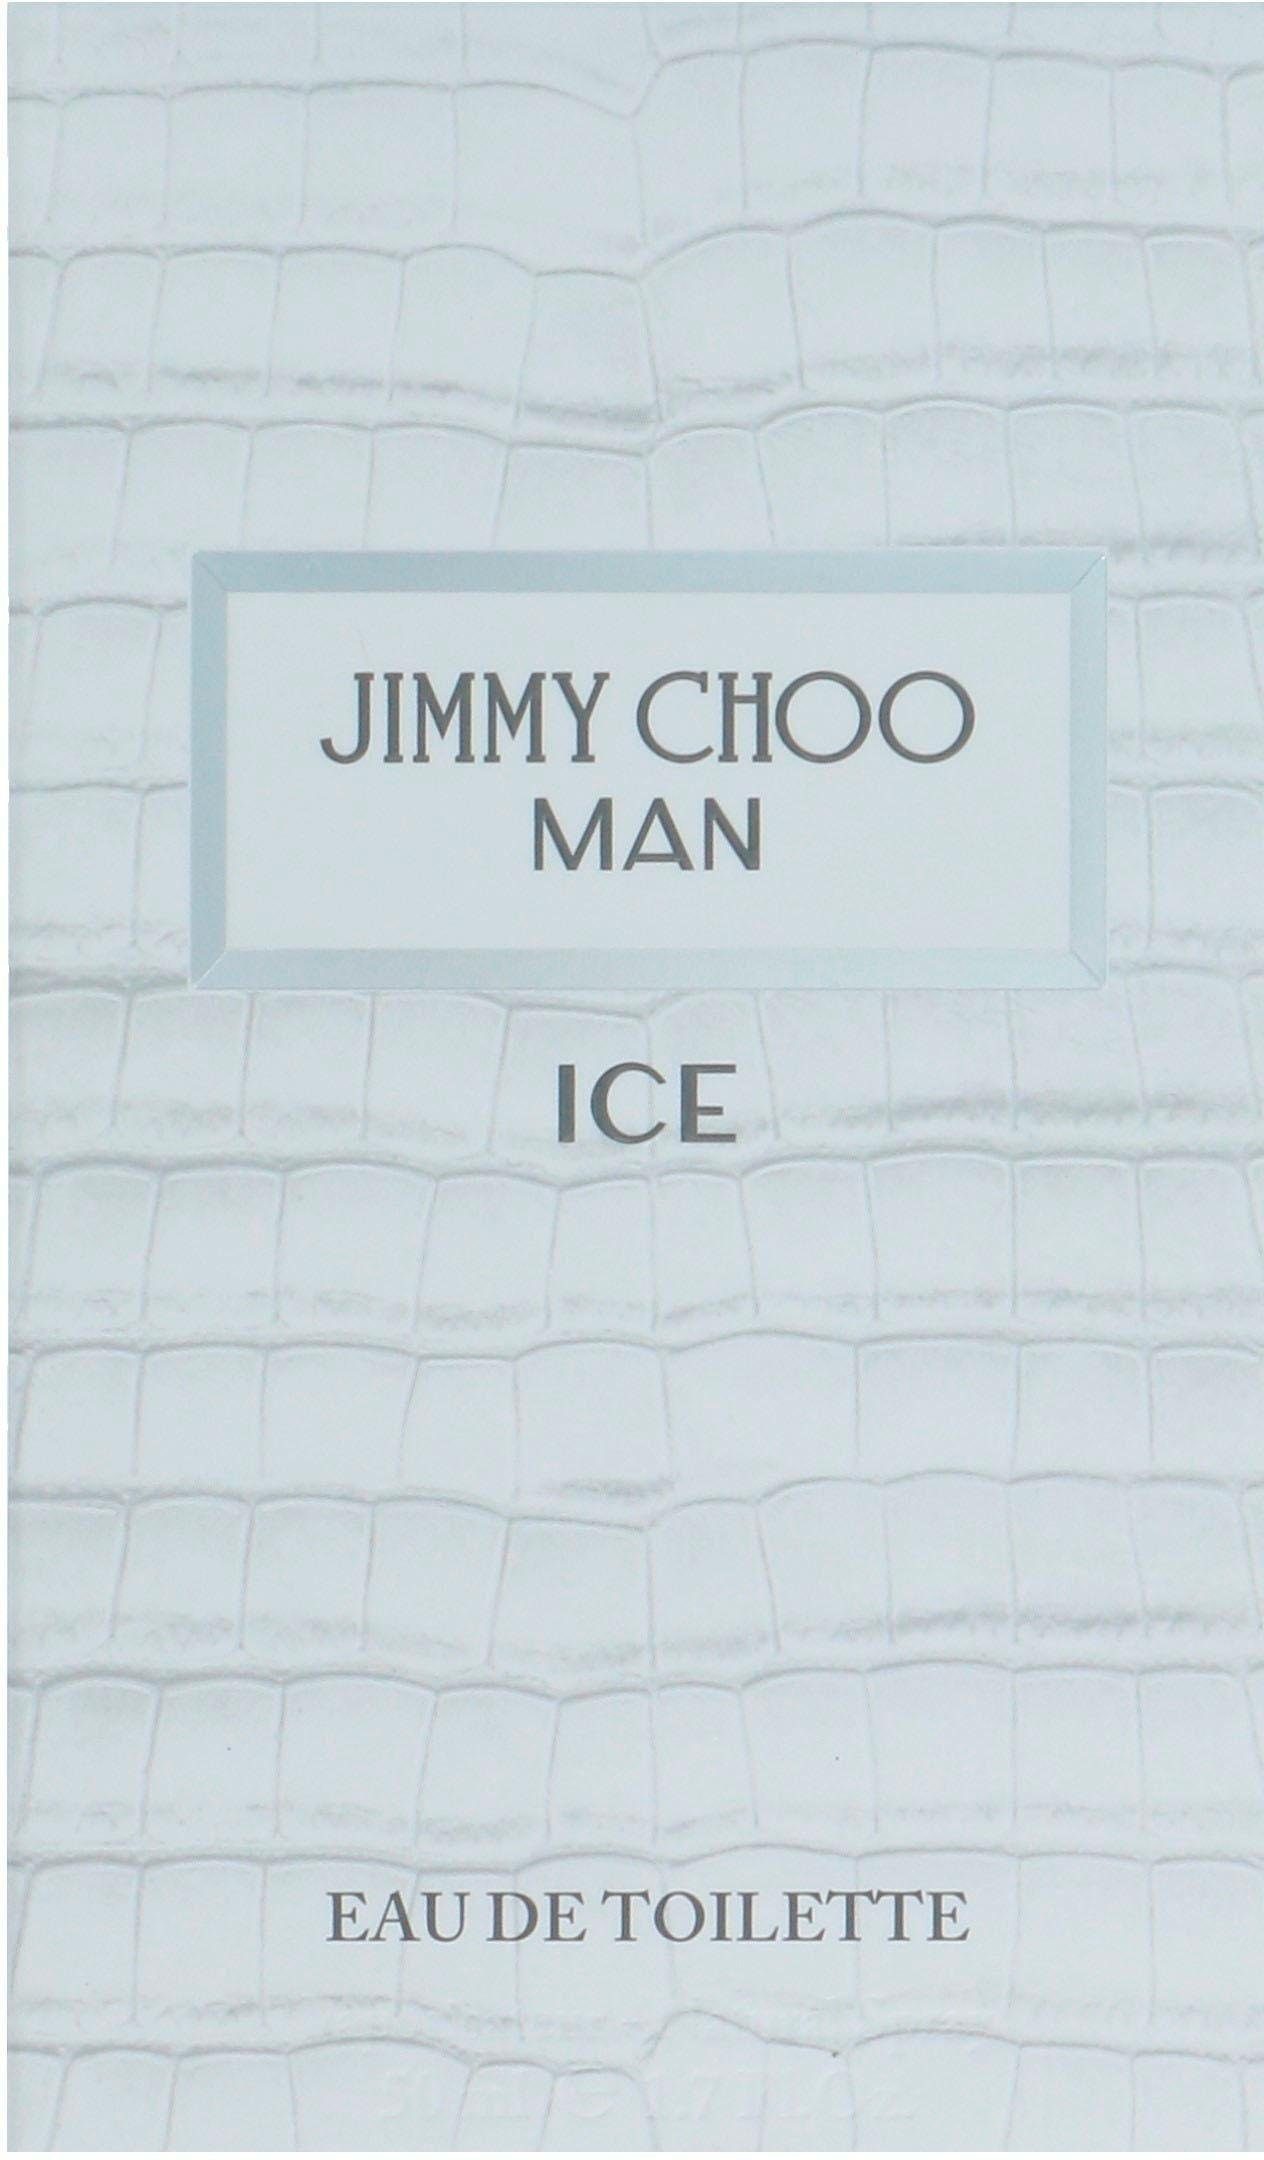 JIMMY CHOO Eau de Toilette Man Ice